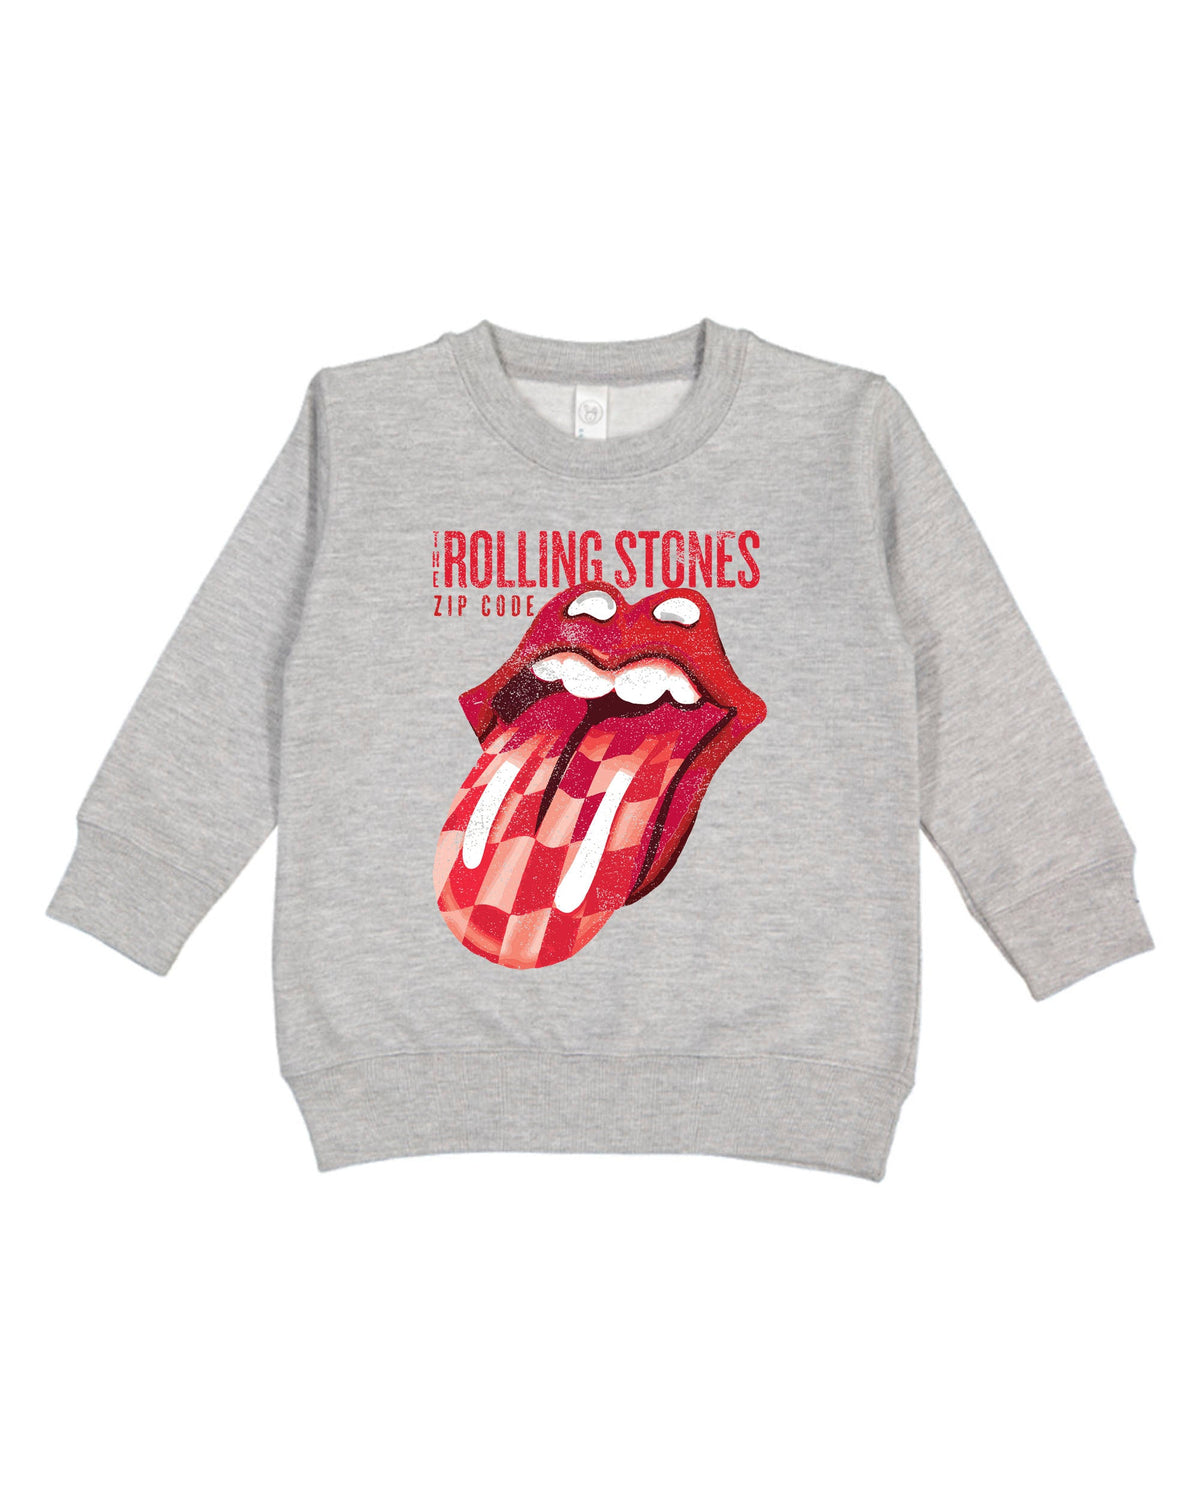 Children's Rolling Stones Zip Code Gray Sweatshirt - shoplivylu